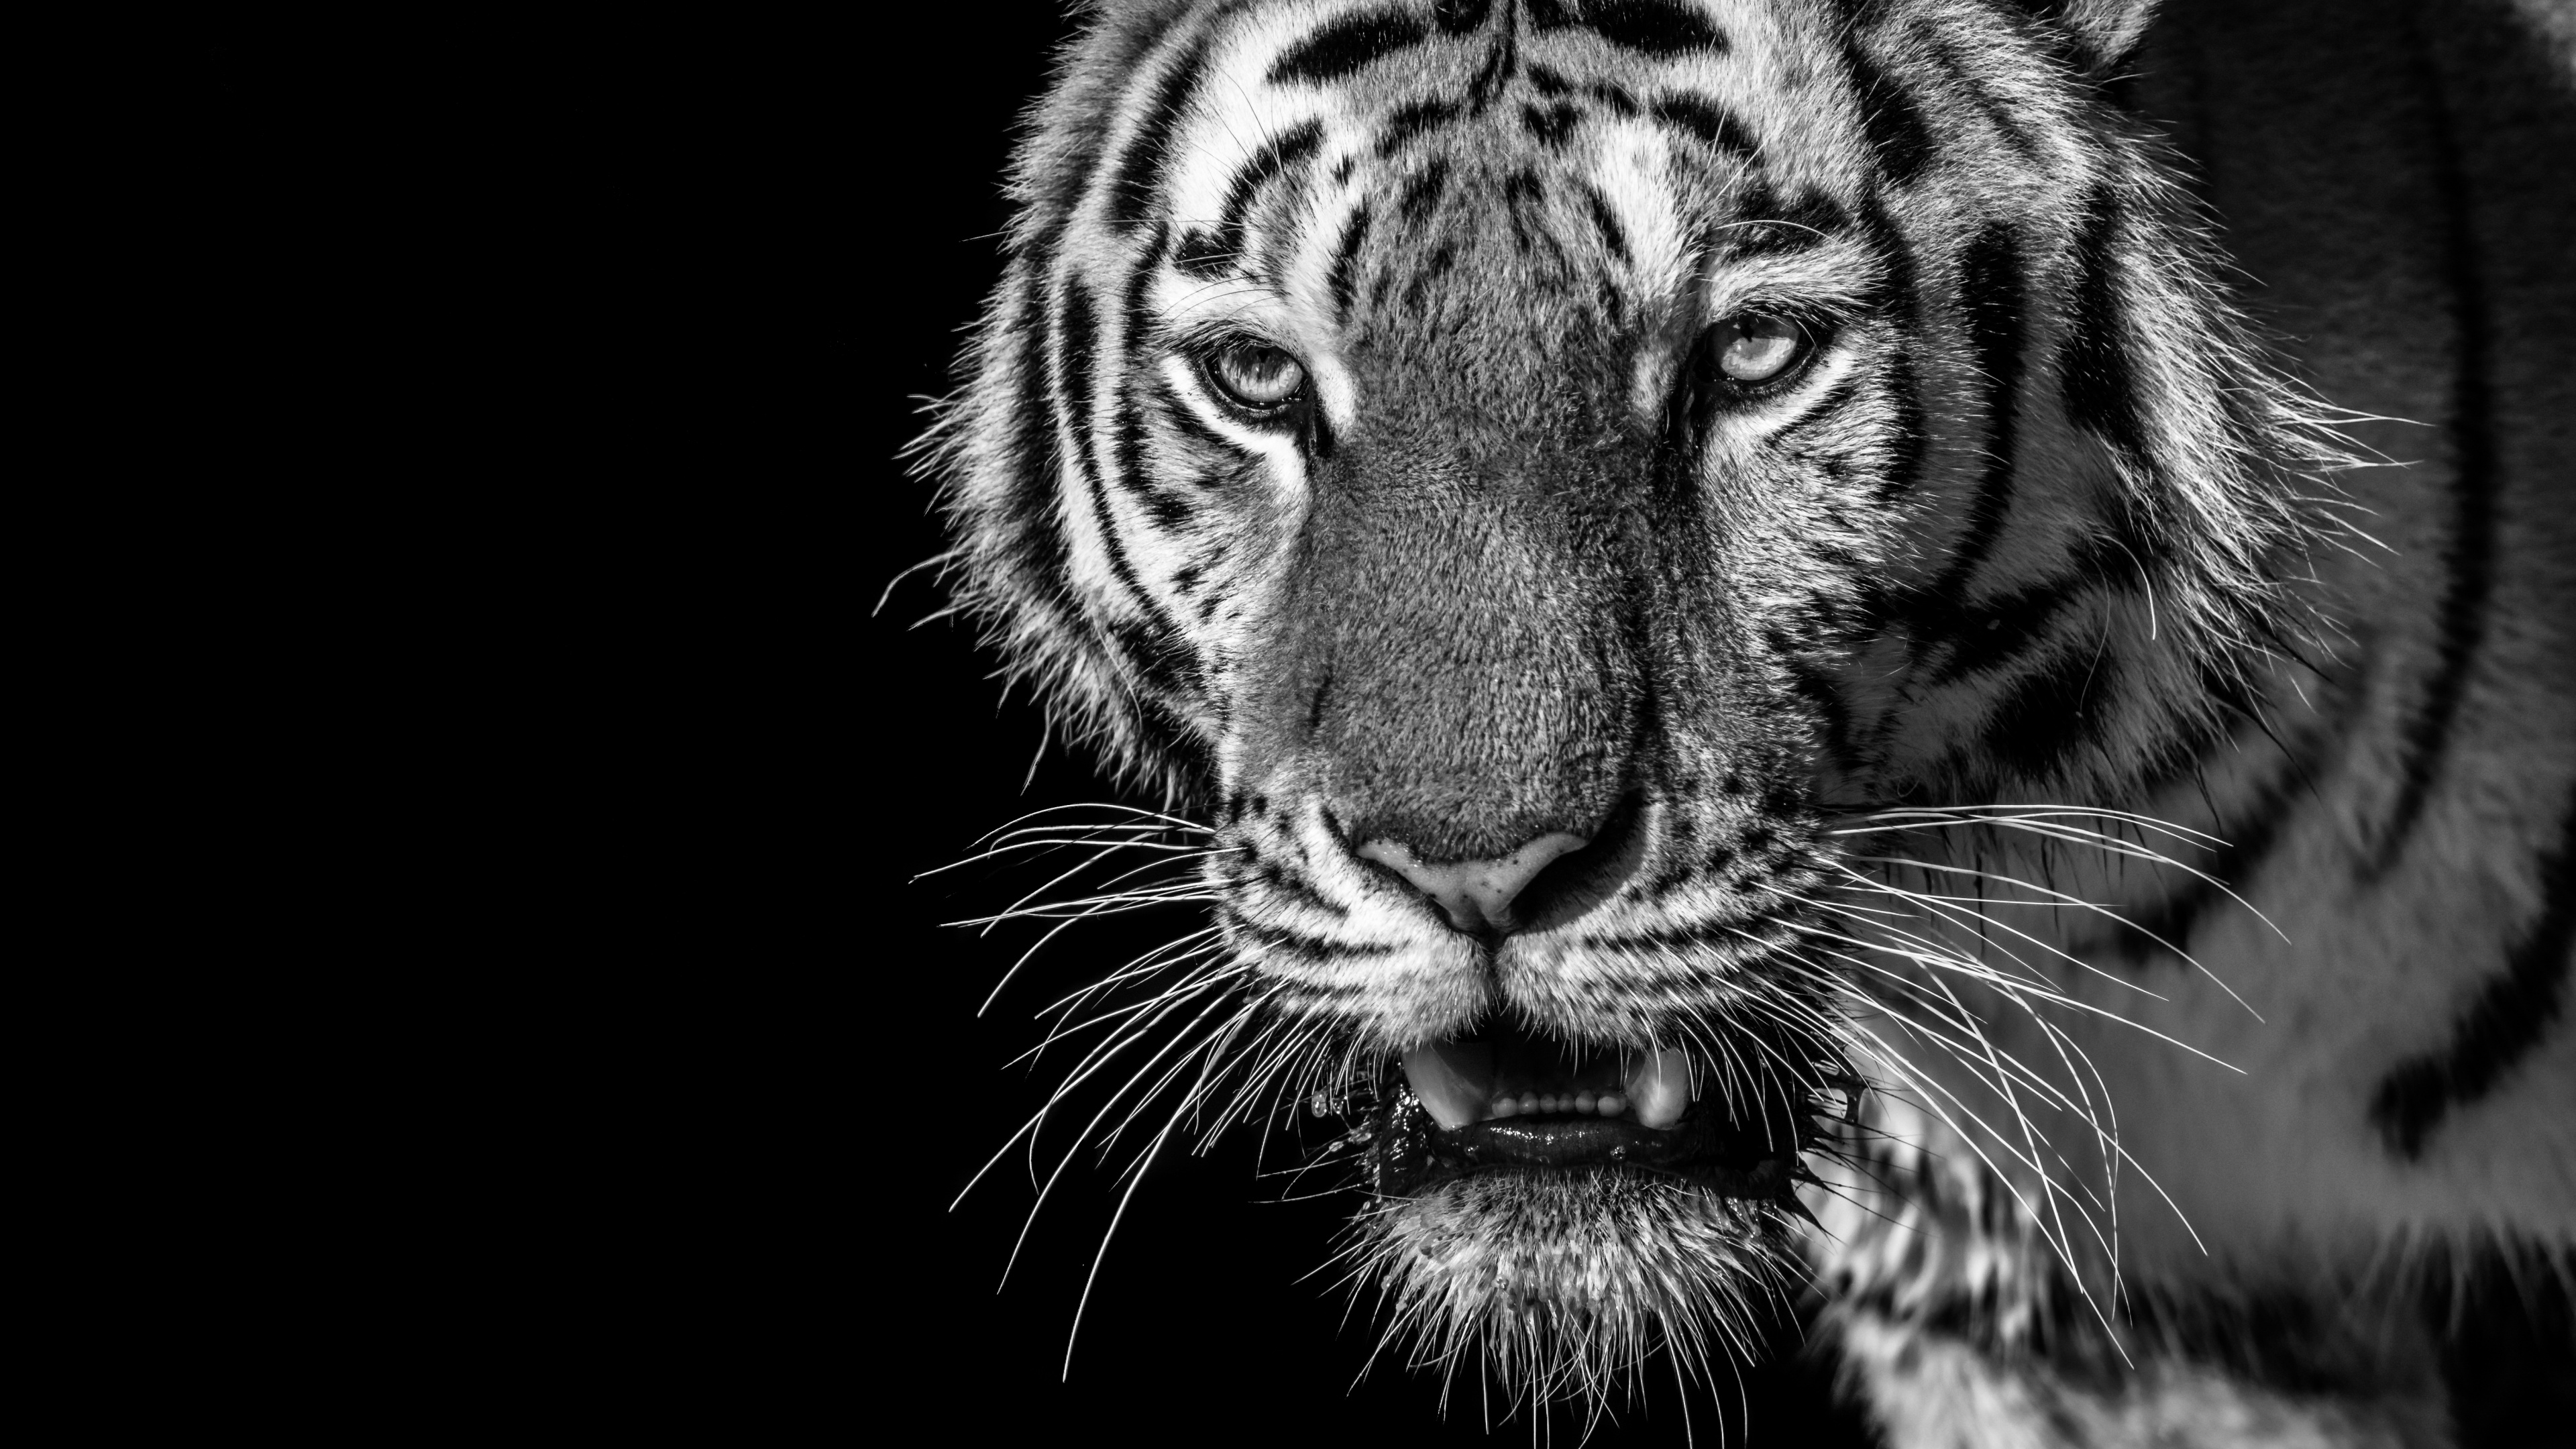 老虎, 白虎, 孟加拉虎, 野生动物, 胡须 壁纸 3840x2160 允许